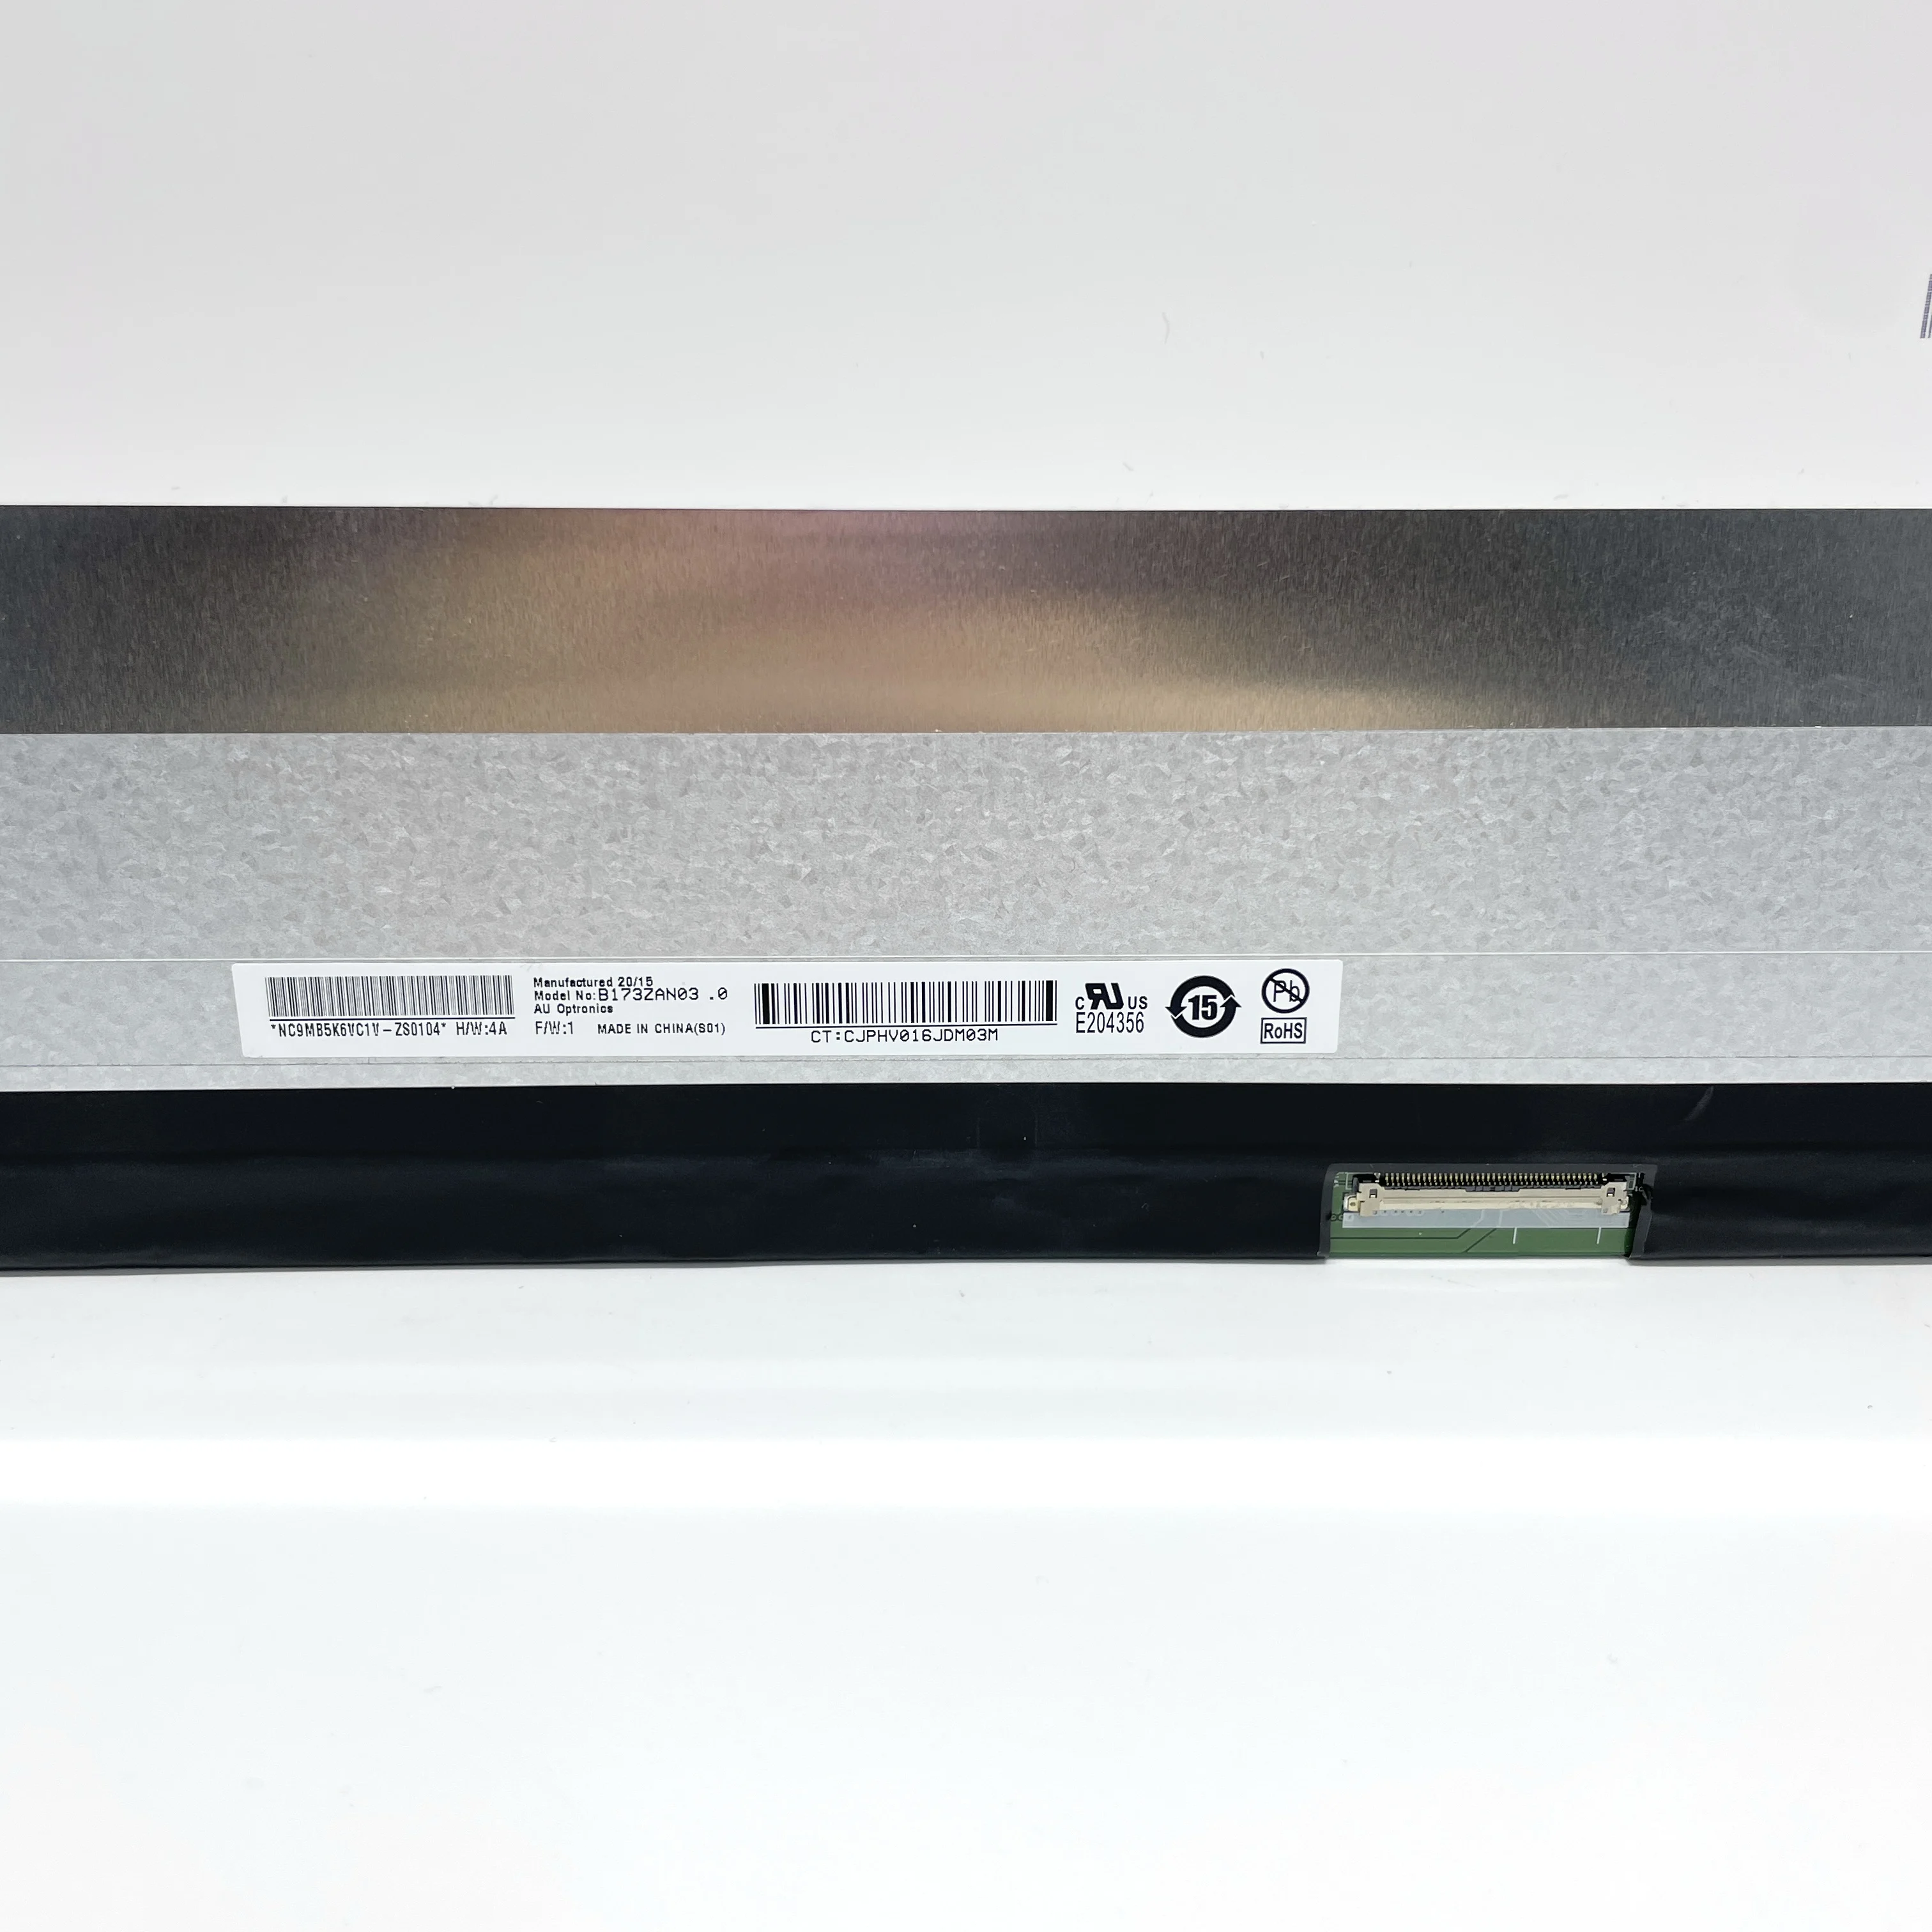 B173ZAN03.0 17,3-дюймовый ноутбук с тонким ЖК-экраном 4K, сменная матрица IPS 40 контактов 3840 (RGB) × 2160, UHD 255PPI, яркость 400 кд/м2